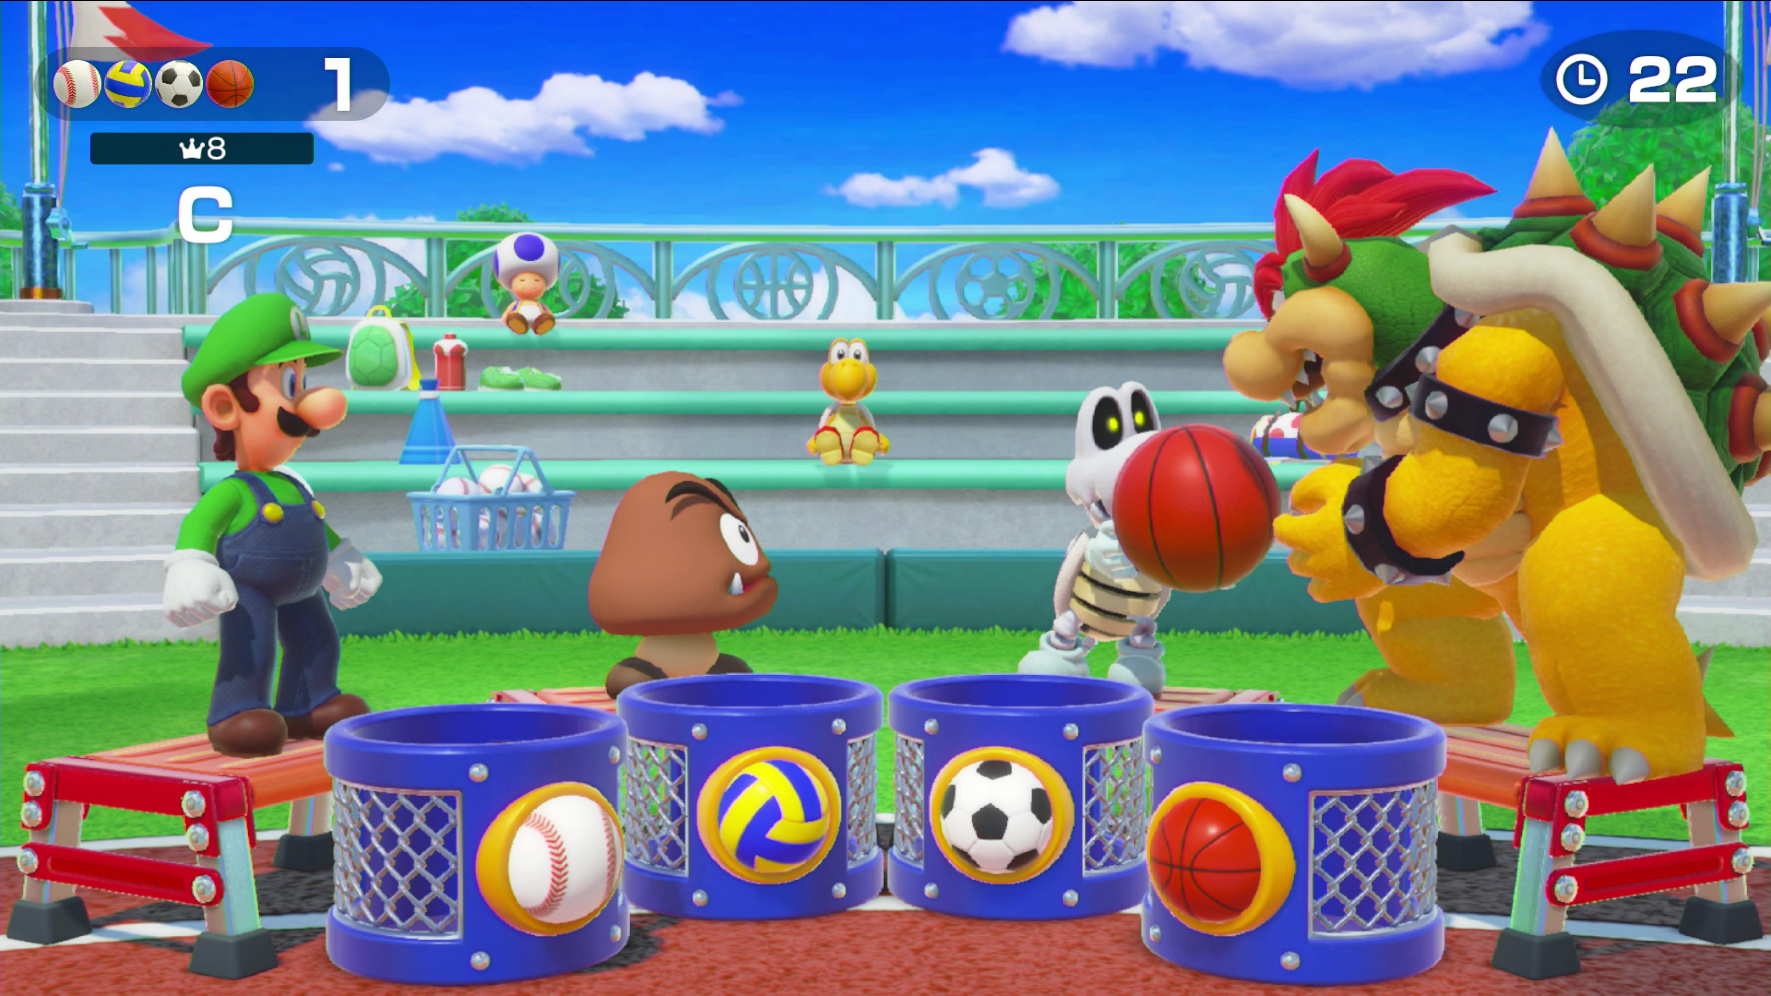 Derecho material exhaustivo Super Mario Party introduce el multijugador online en una actualización